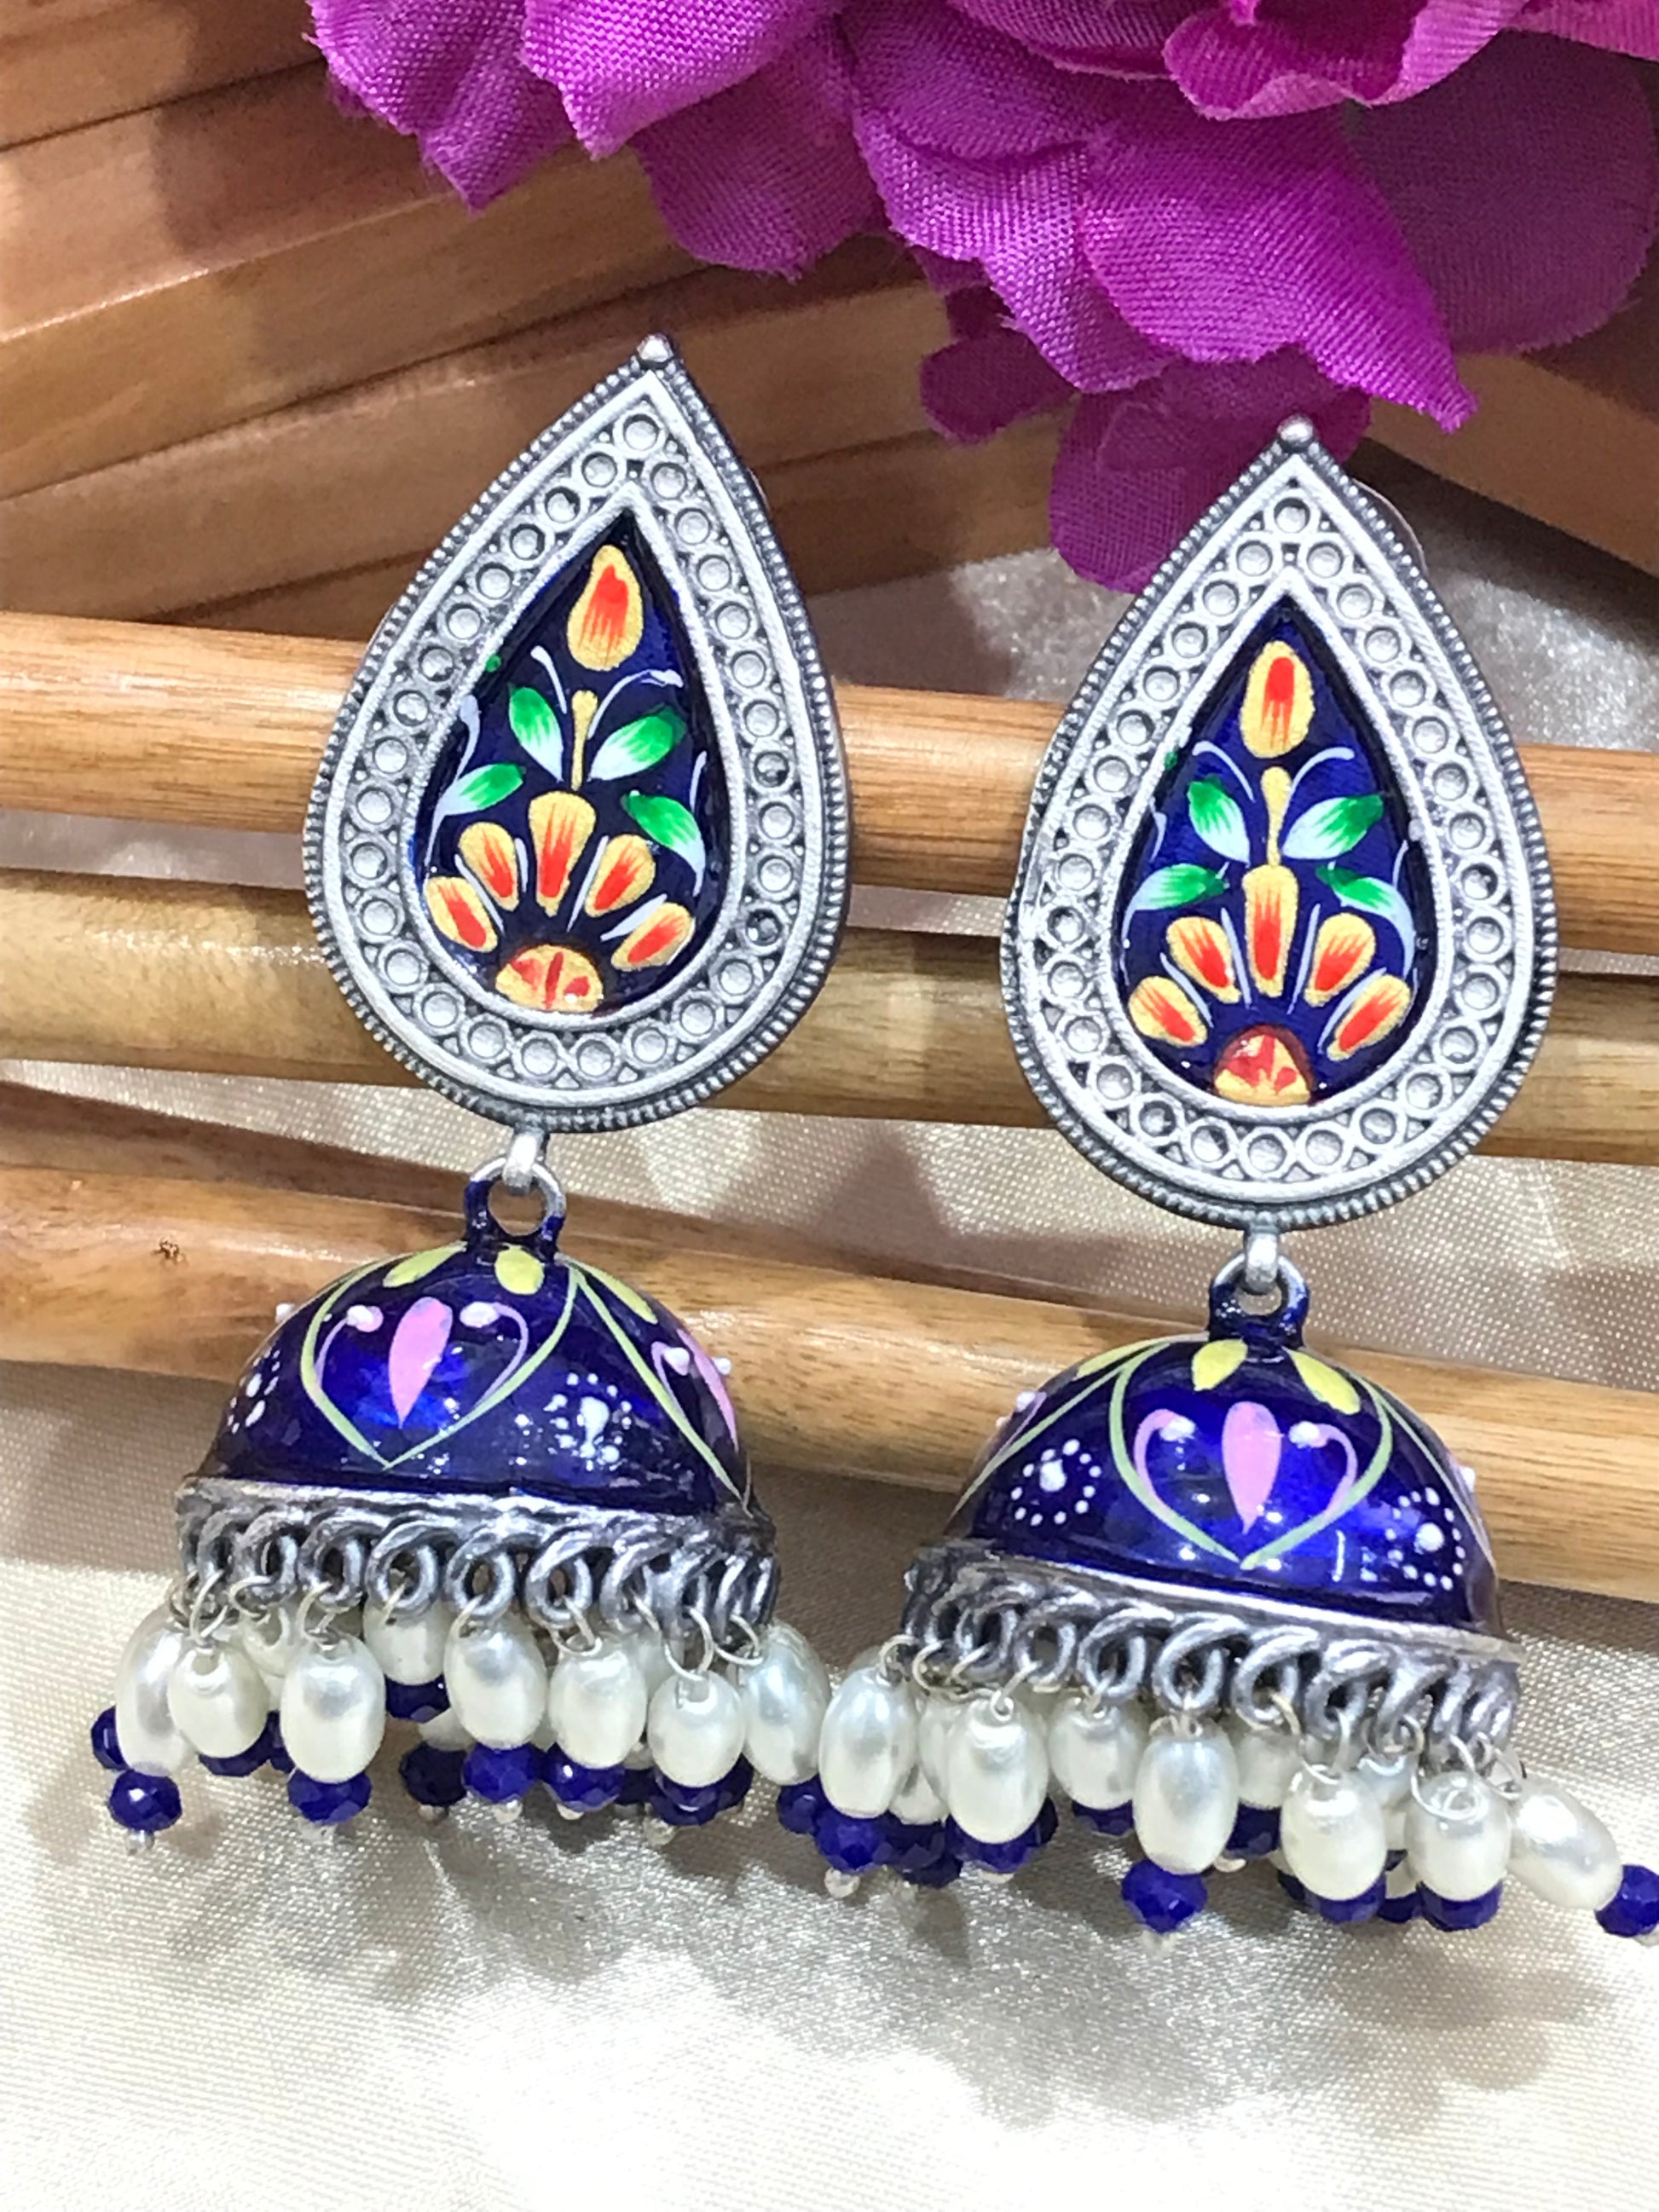 Silver Oxidized Jhumka Earrings With Pearl Drop in Sierra Vista